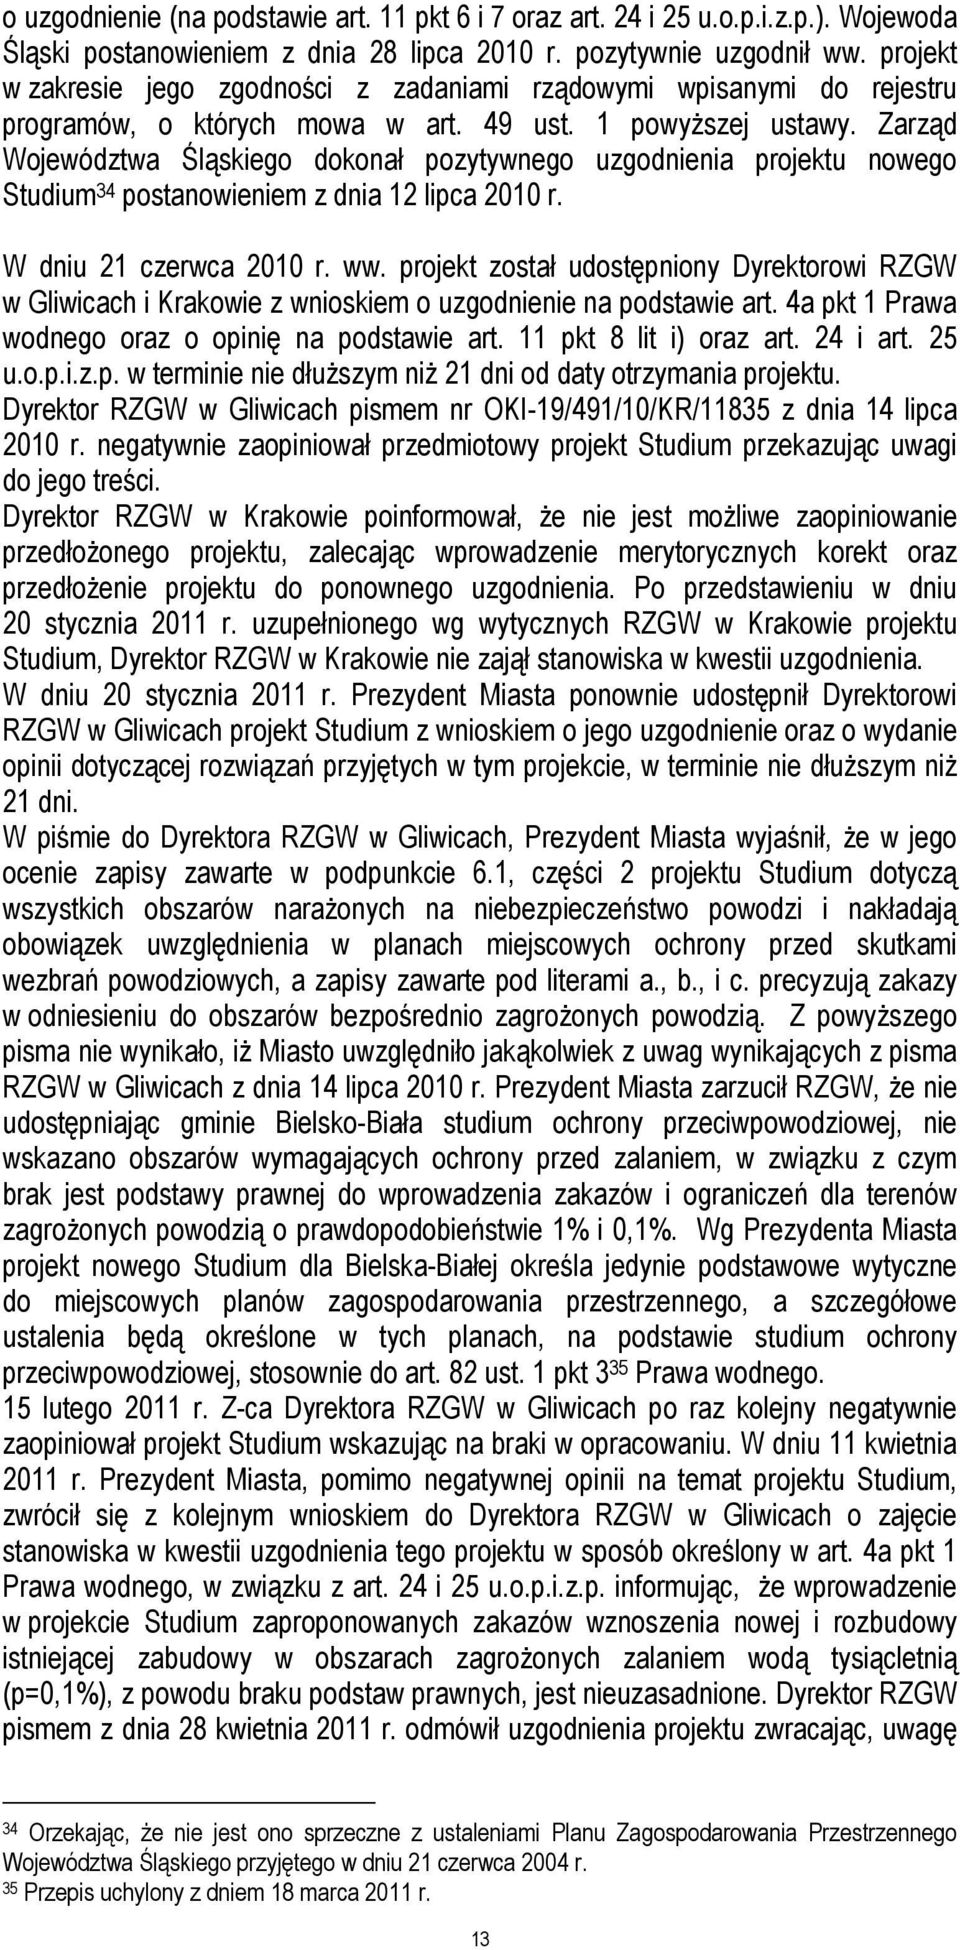 Zarząd Województwa Śląskiego dokonał pozytywnego uzgodnienia projektu nowego Studium 34 postanowieniem z dnia 12 lipca 2010 r. W dniu 21 czerwca 2010 r. ww.